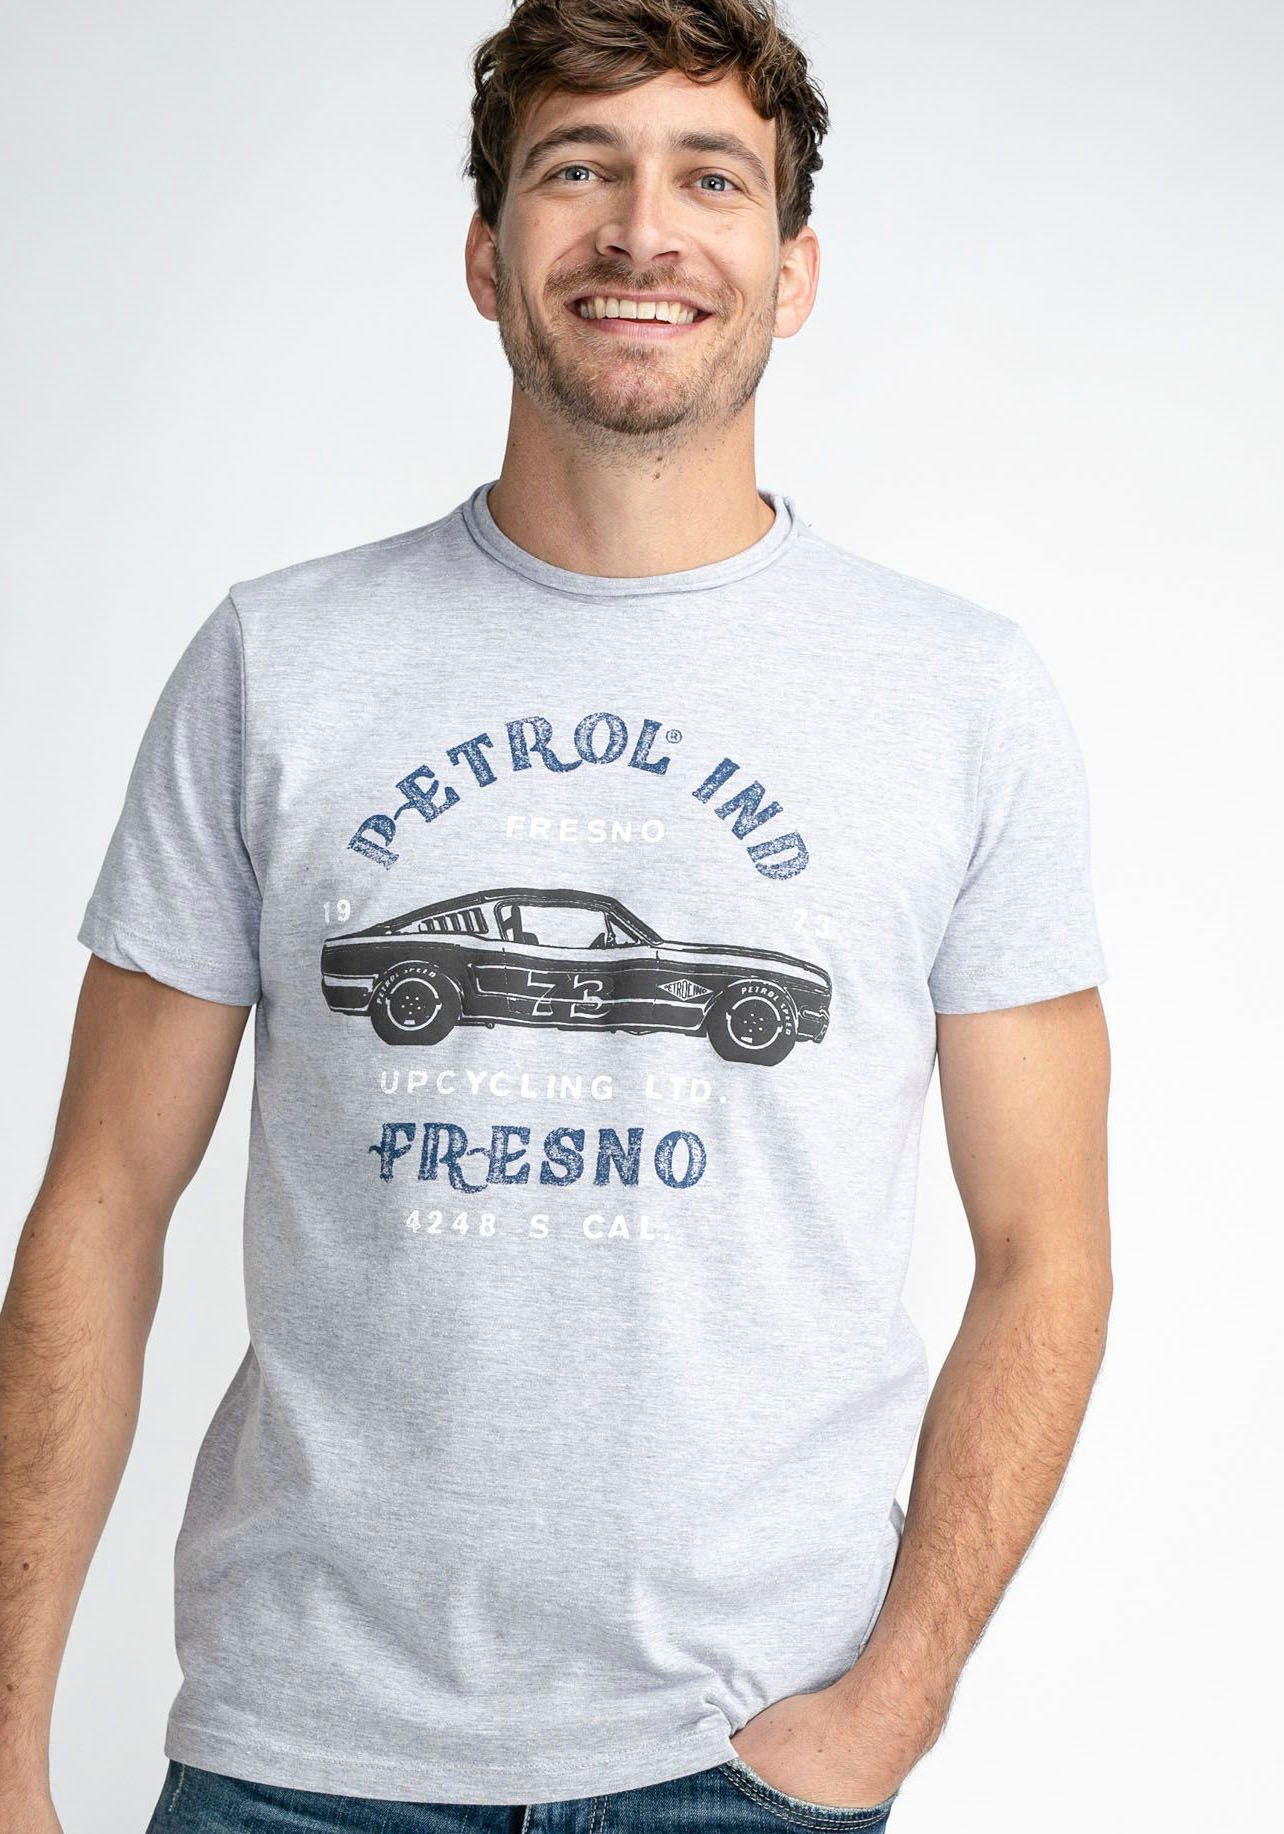 Petrol Industries T-Shirt Photo Print, Bild-Print Mehrfarbiger